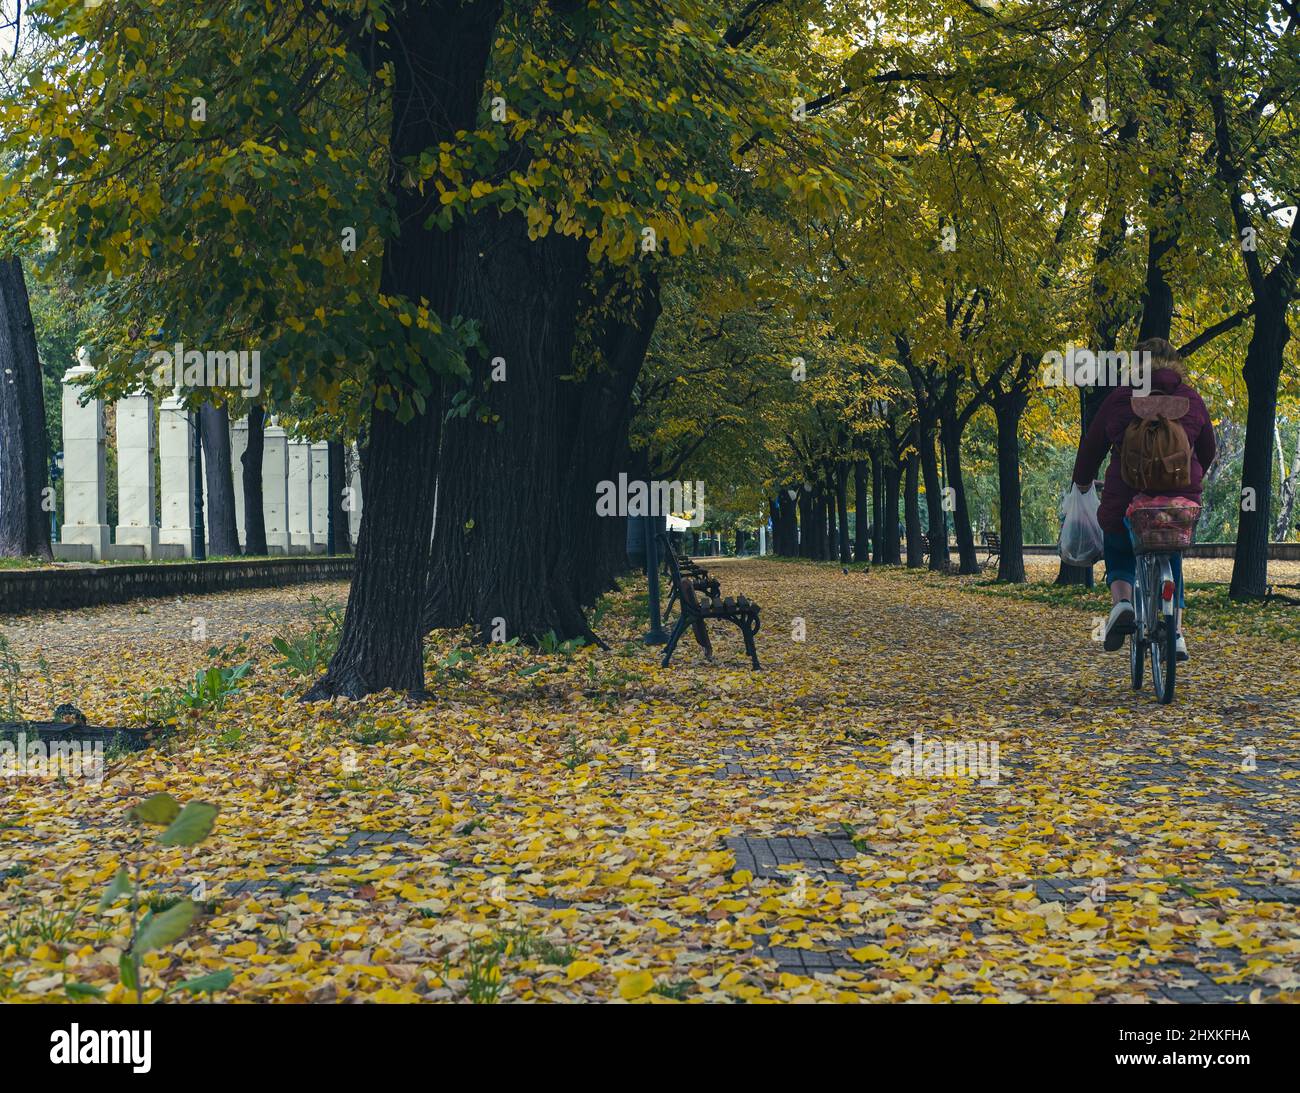 À vélo en automne. Les femmes passent un vélo pour rentrer chez elles après avoir fait du shopping. Belle photo d'un parc avec des feuilles jaunes avec feuillage d'automne Banque D'Images